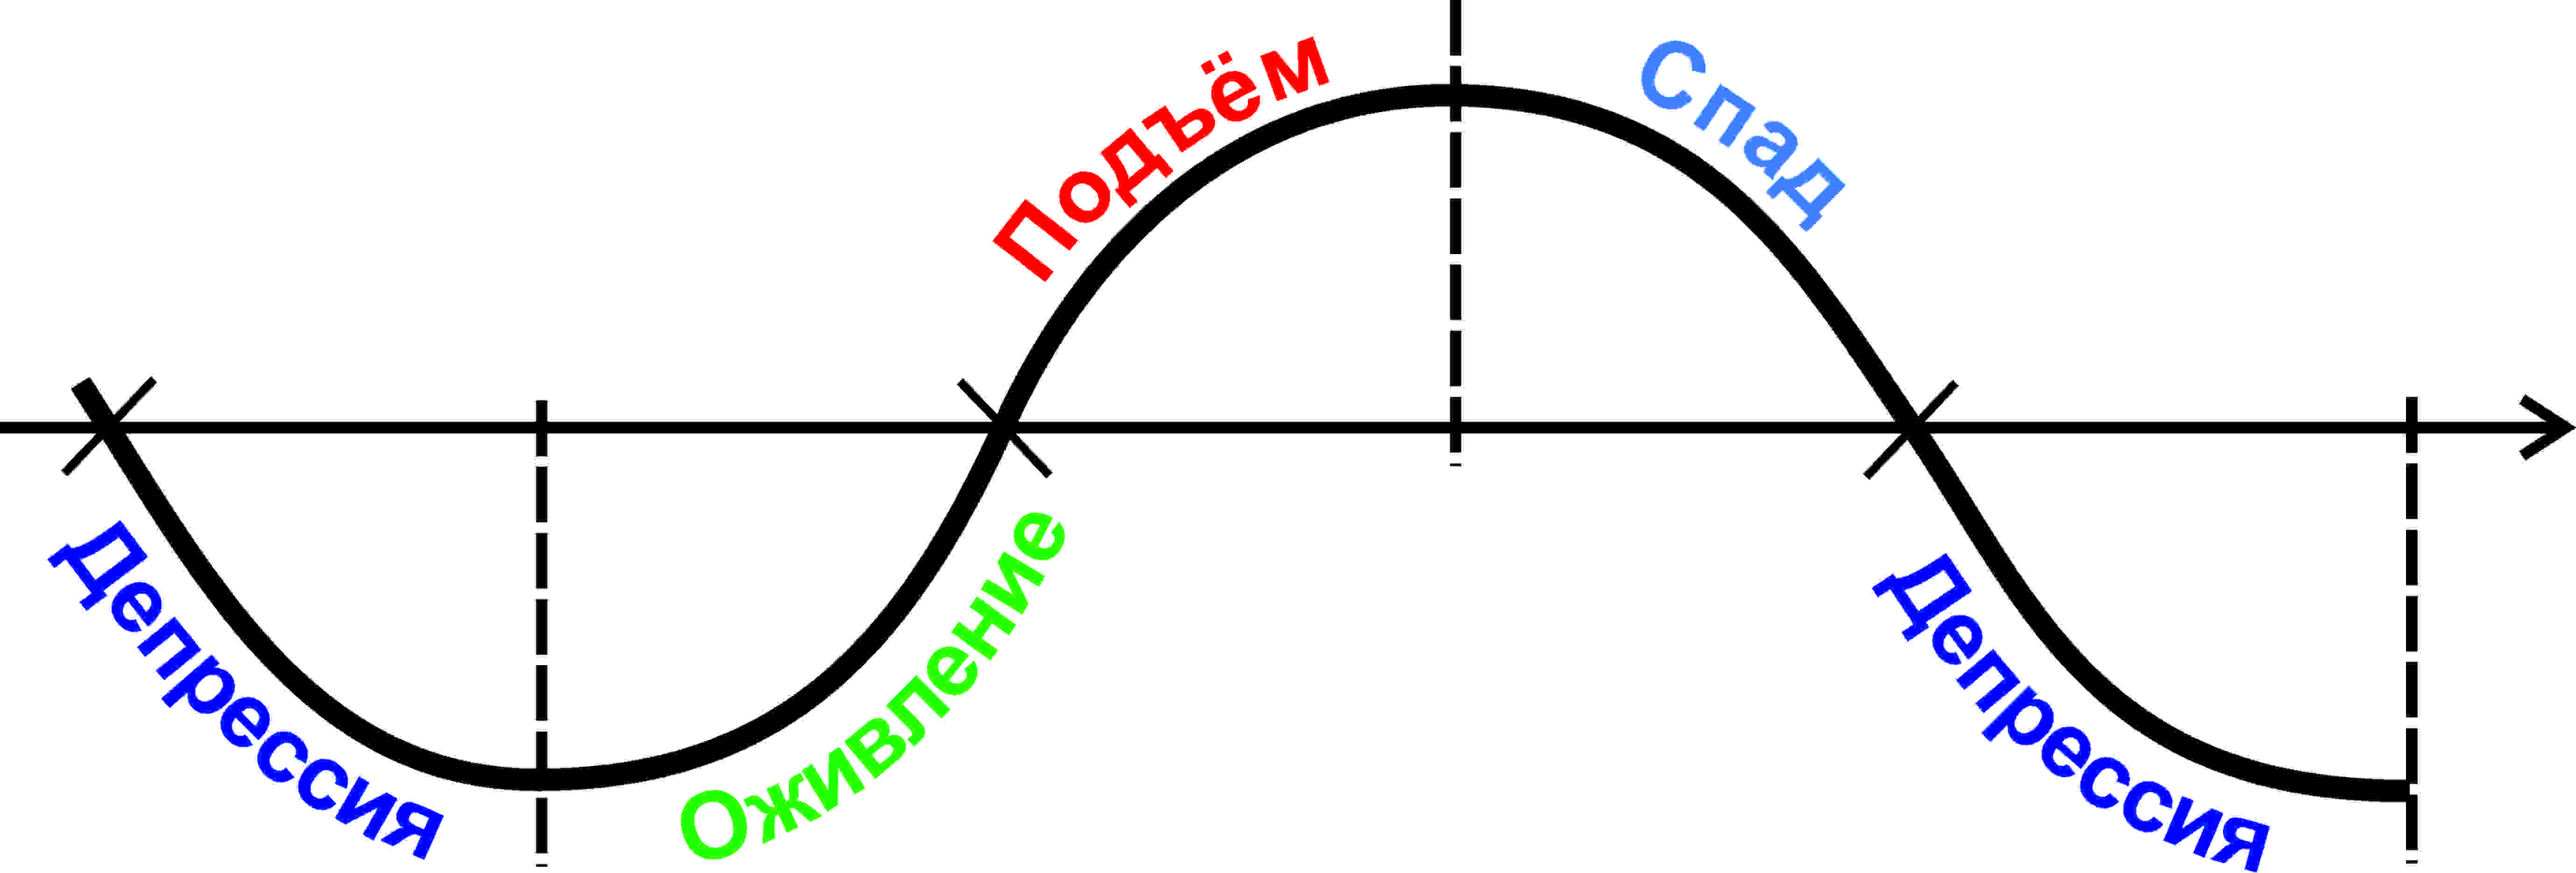 Экономические циклы Кондратьева